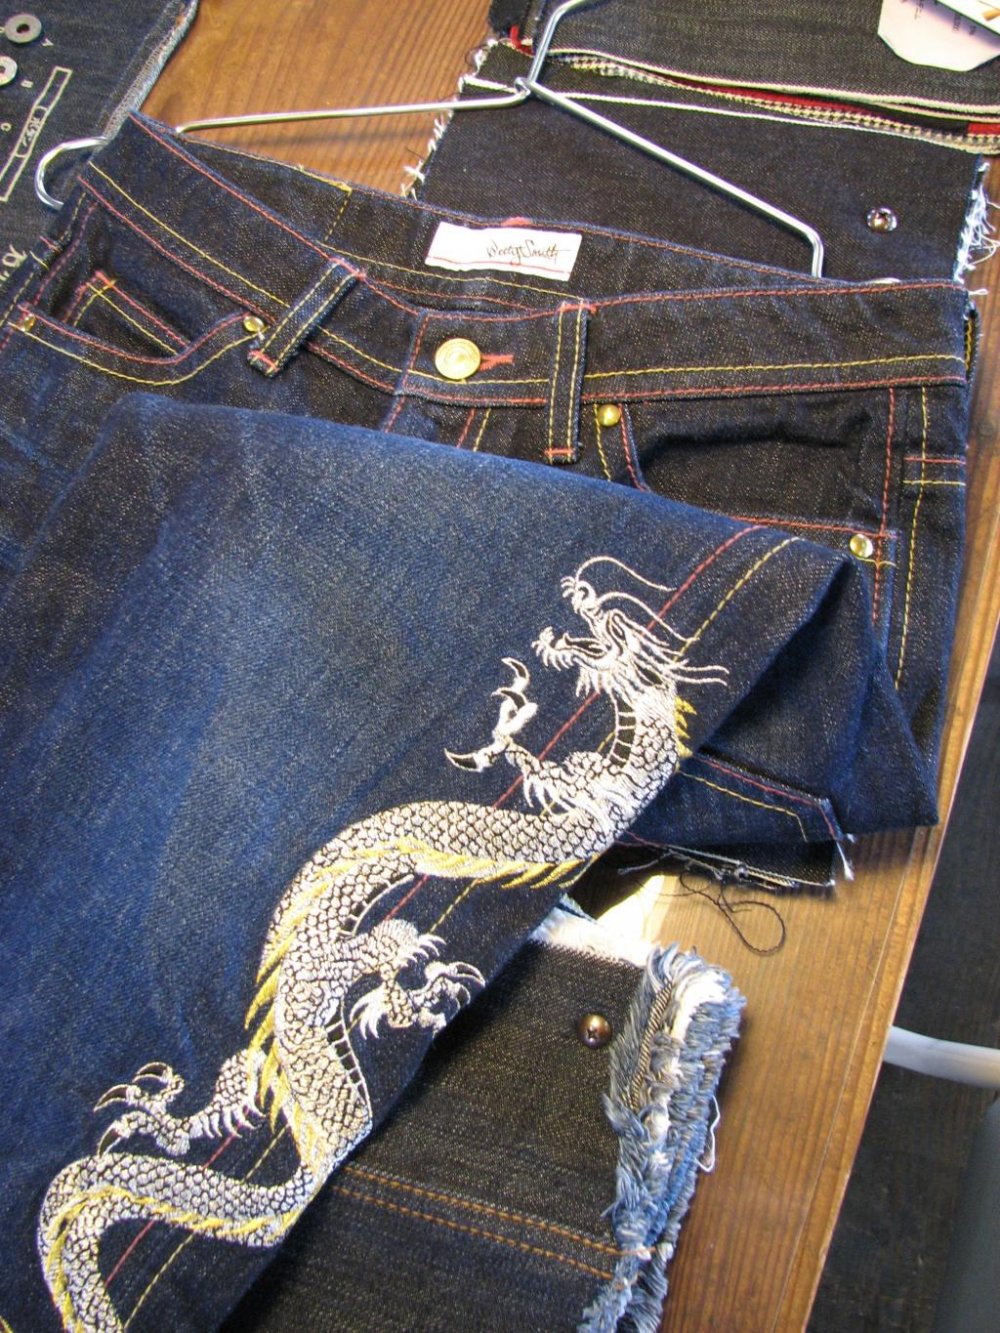 CUSTOM MST JEANS Custom Made Jeans Inspired By Missing Since |  forum.iktva.sa